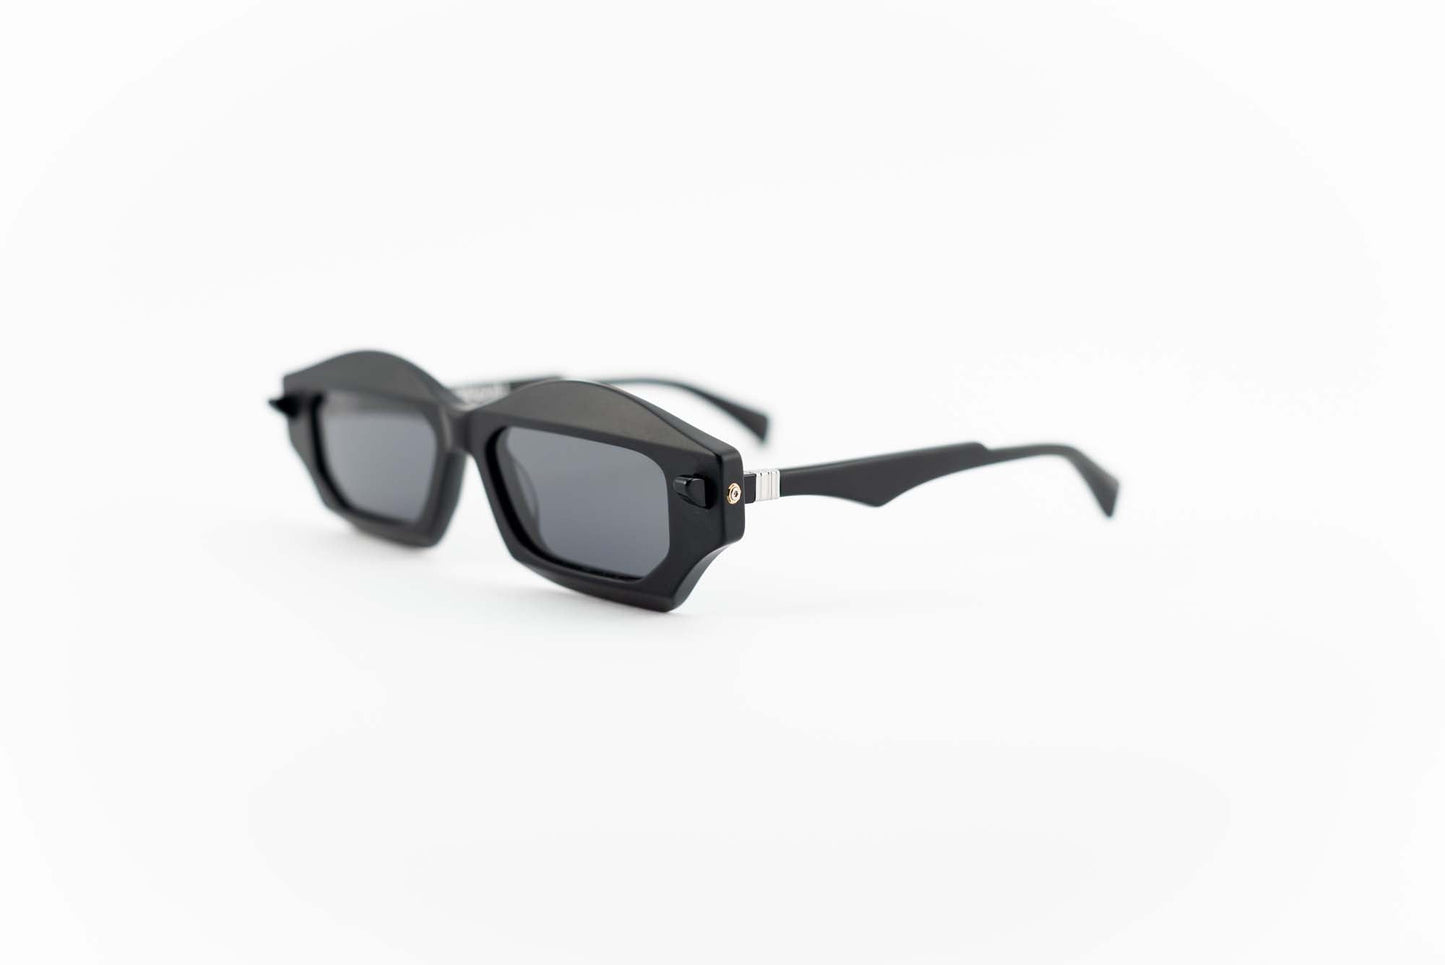 Kuboraum Occhiali da sole Nero / Acetato / poligonale Kuboraum MASKE Q6 BMM: occhiale in acetato nero poligonale da sole